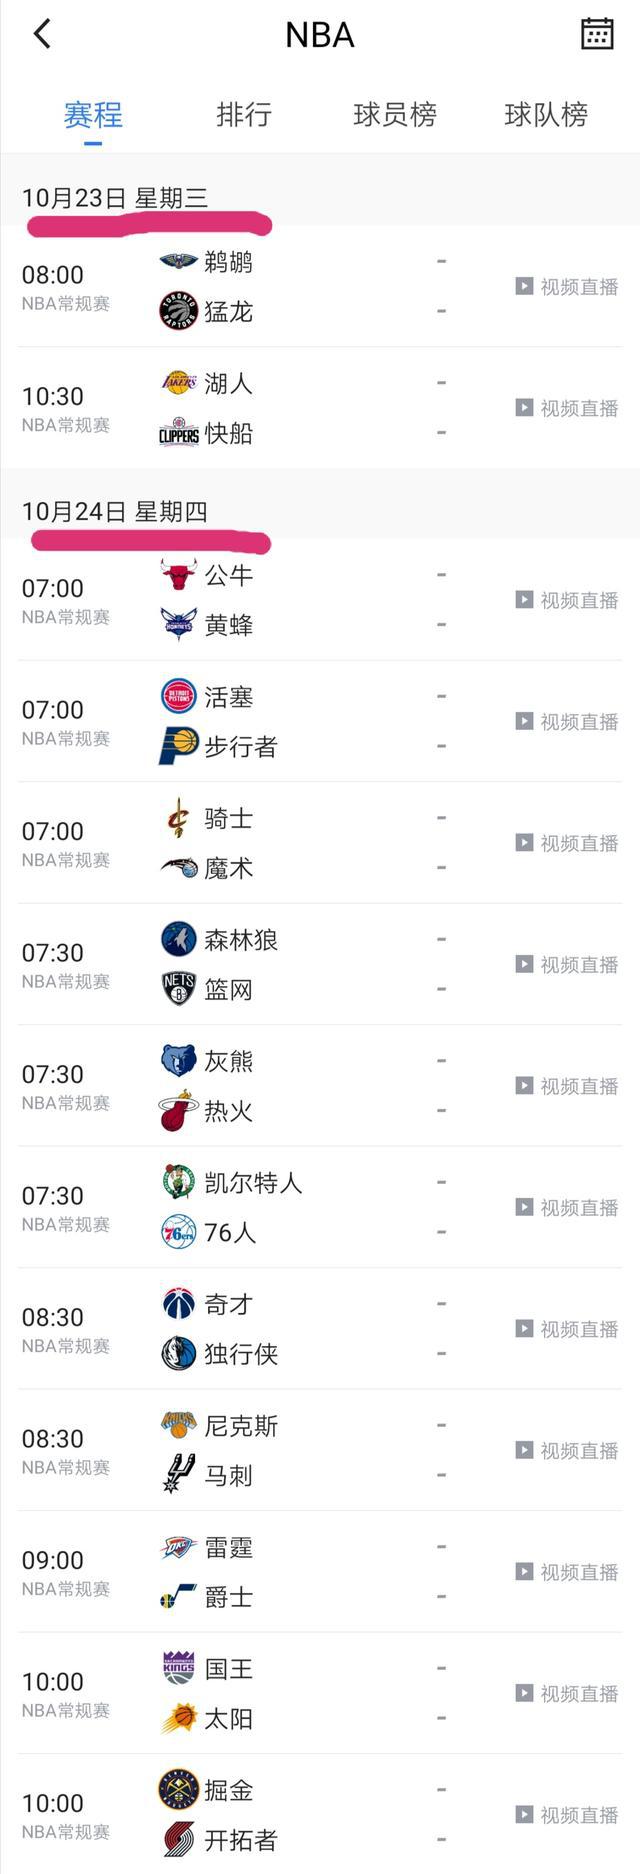 nba中国赛转播台 NBA常规赛揭幕战转播安排(6)